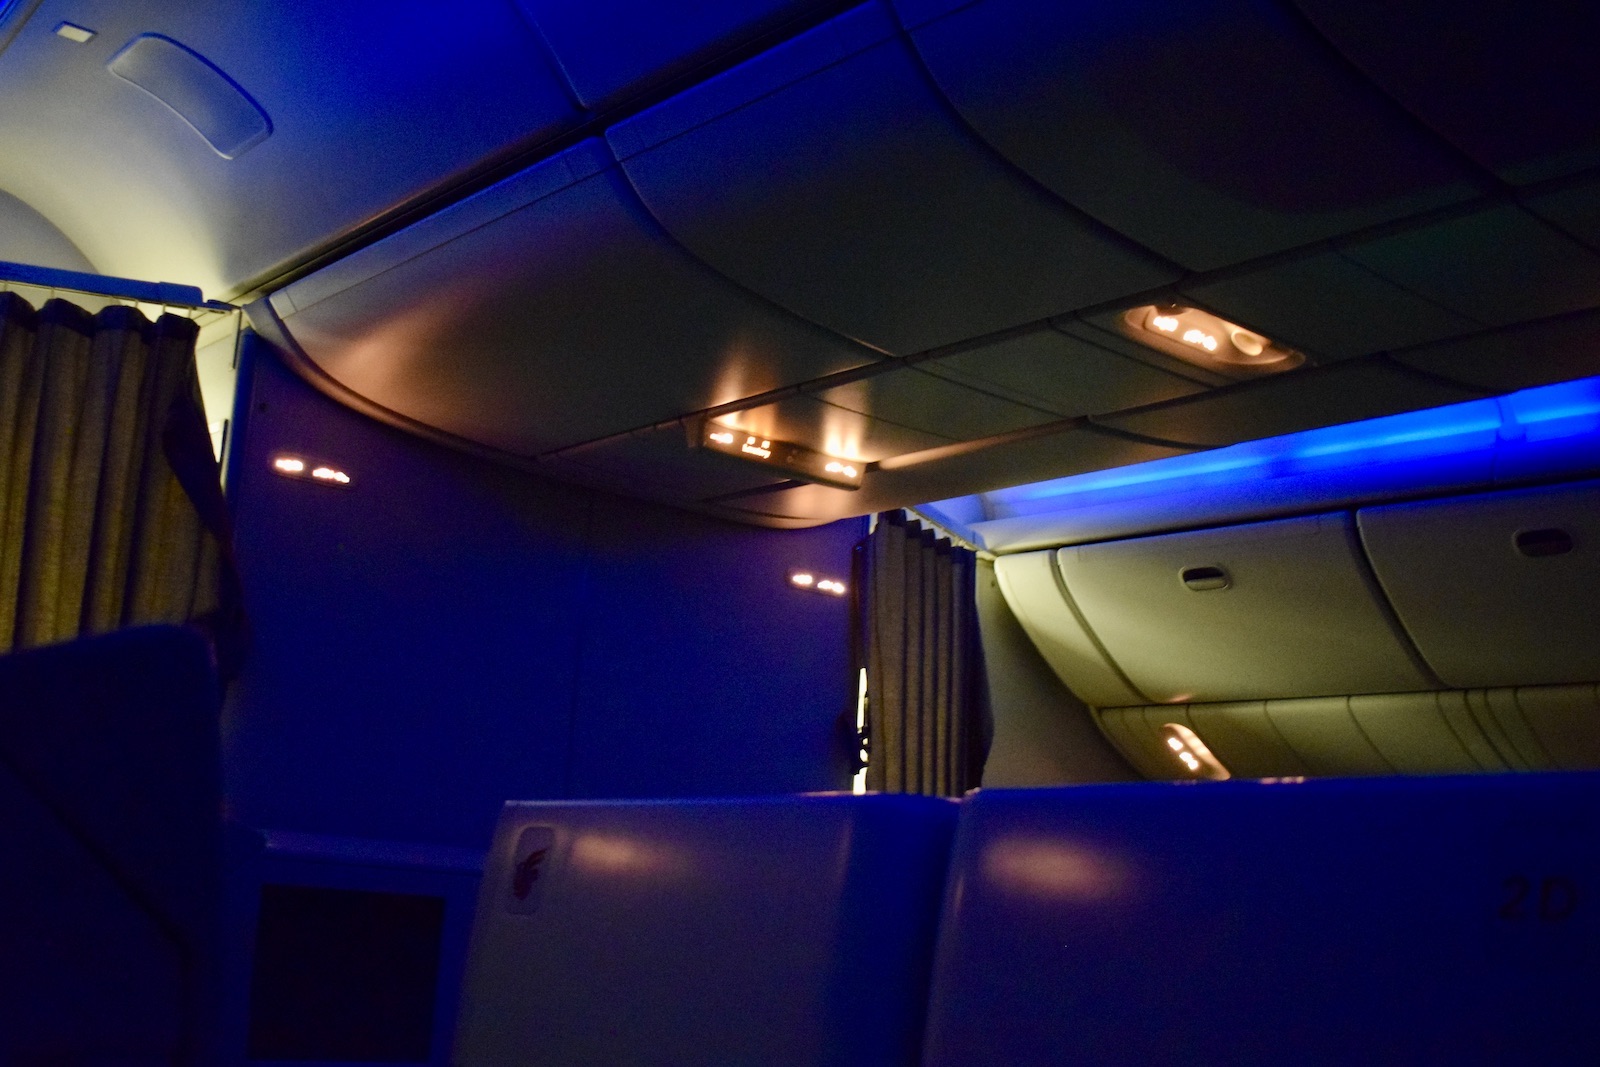 Decke, Im Haus, Flugzeugkabine, Licht, Flugzeug, Beleuchtung, Wand, Platane Flugzeug Hobel, Blau